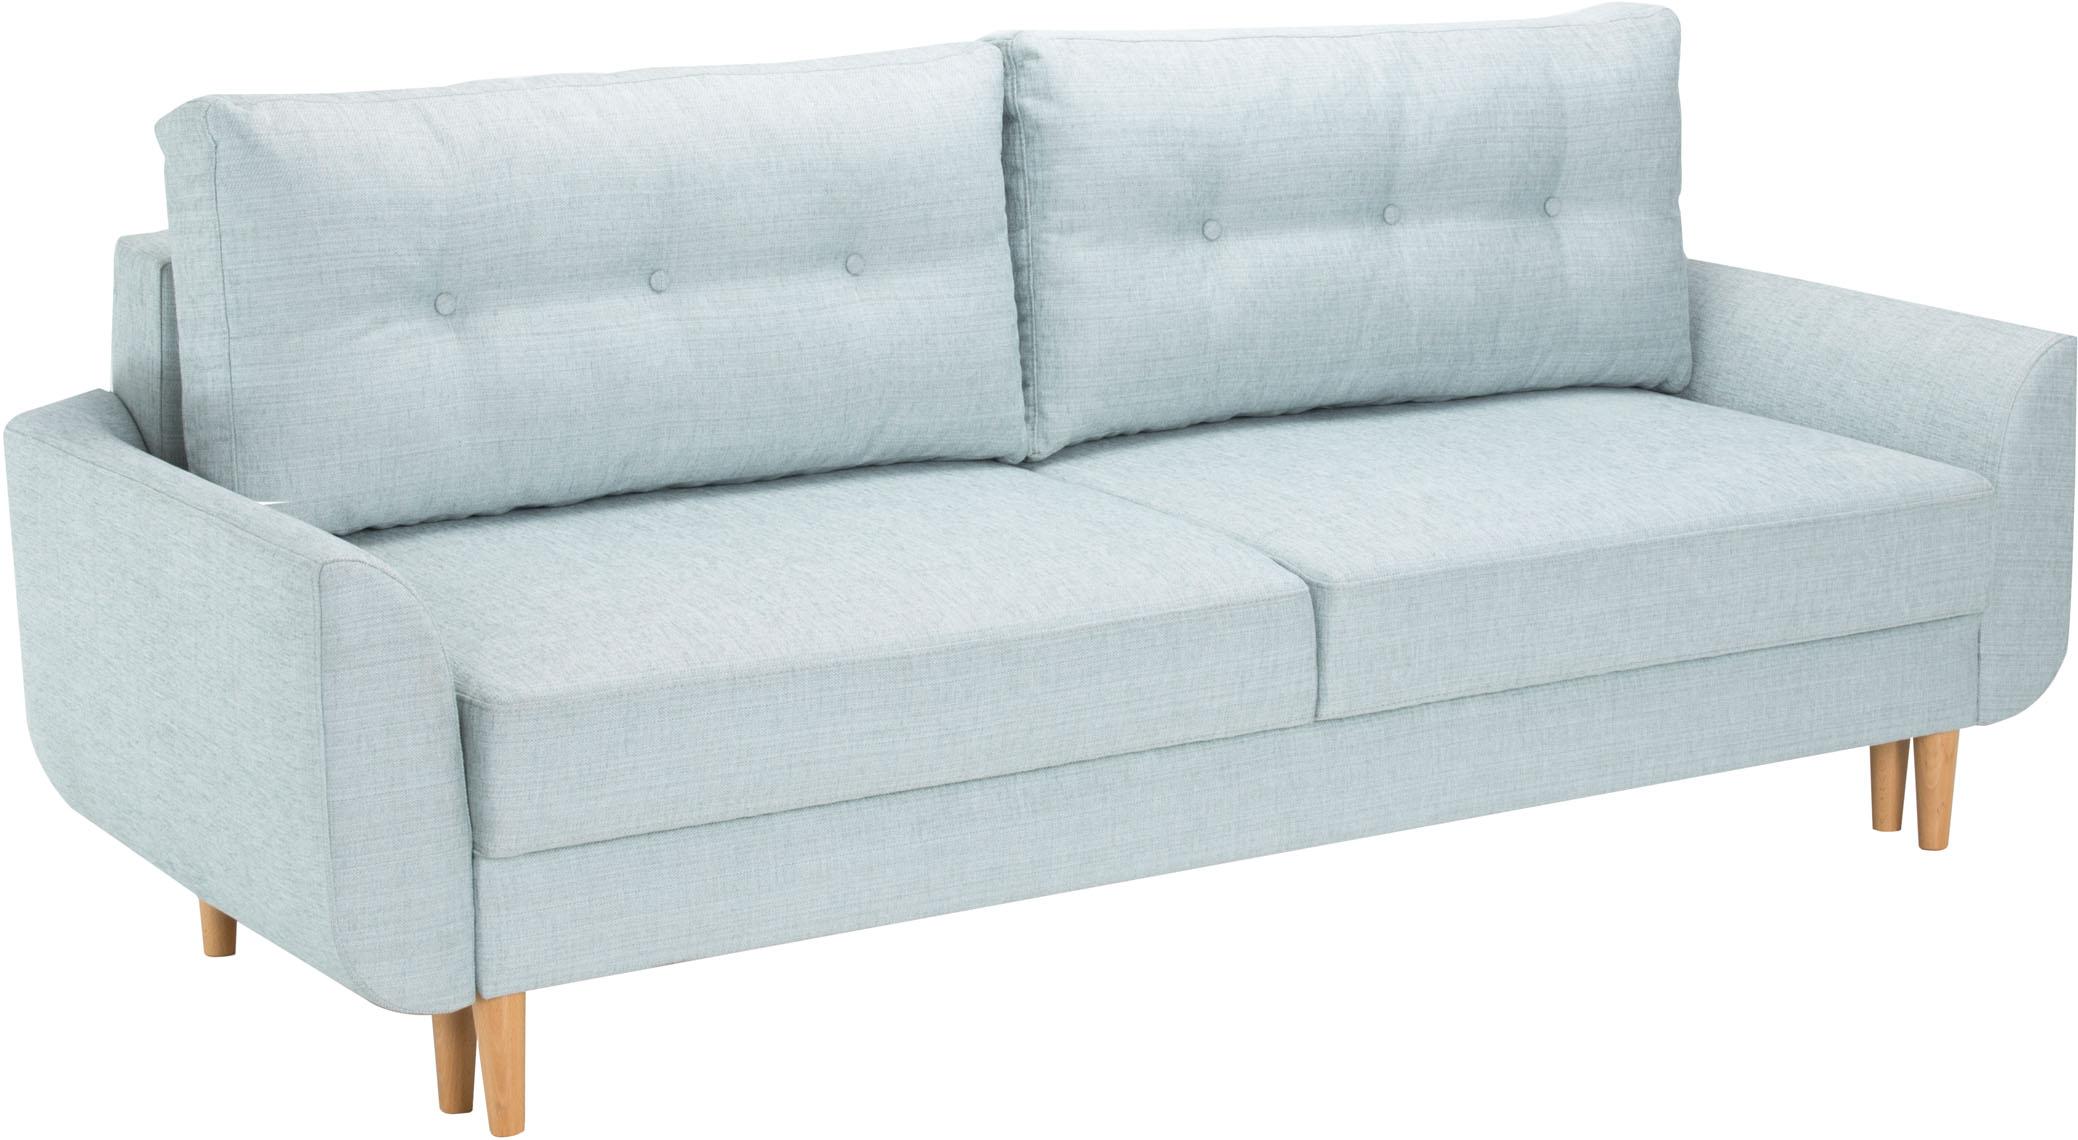 3-seat sofa bed Cotta